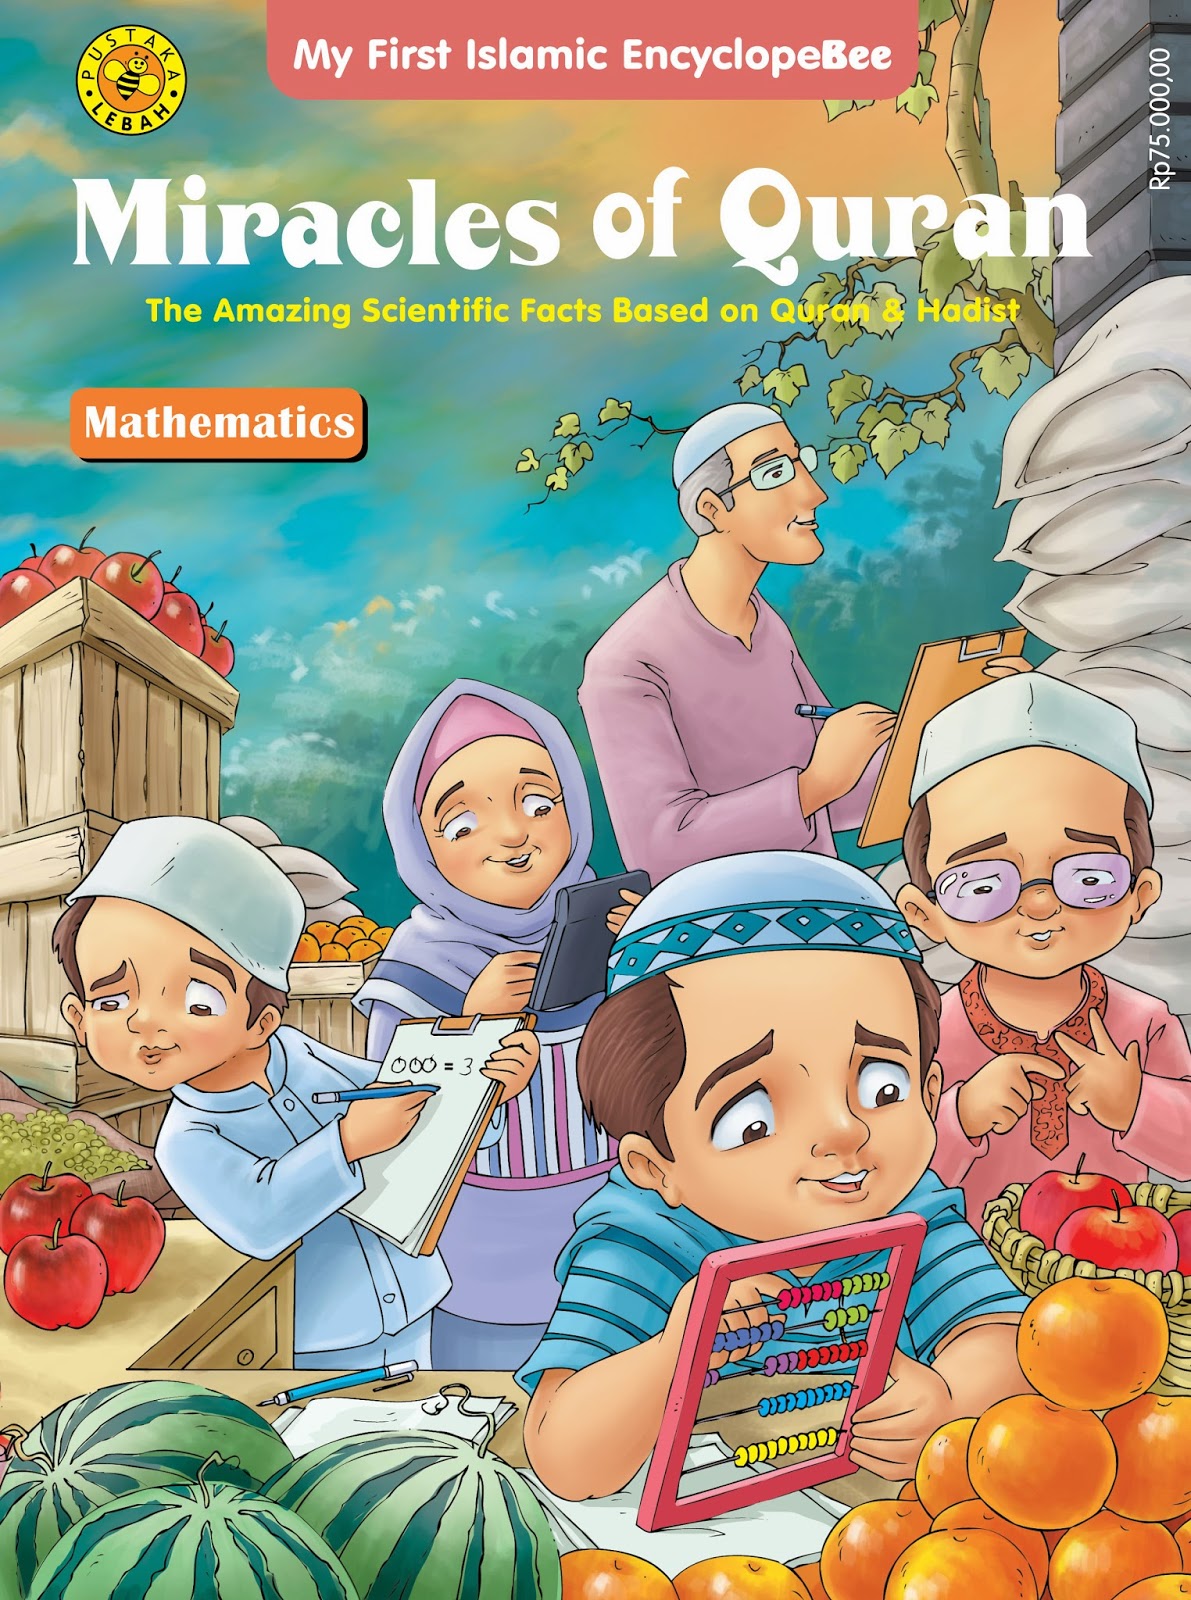 pustaka lebah media edukasi anak : miracle of al-quran